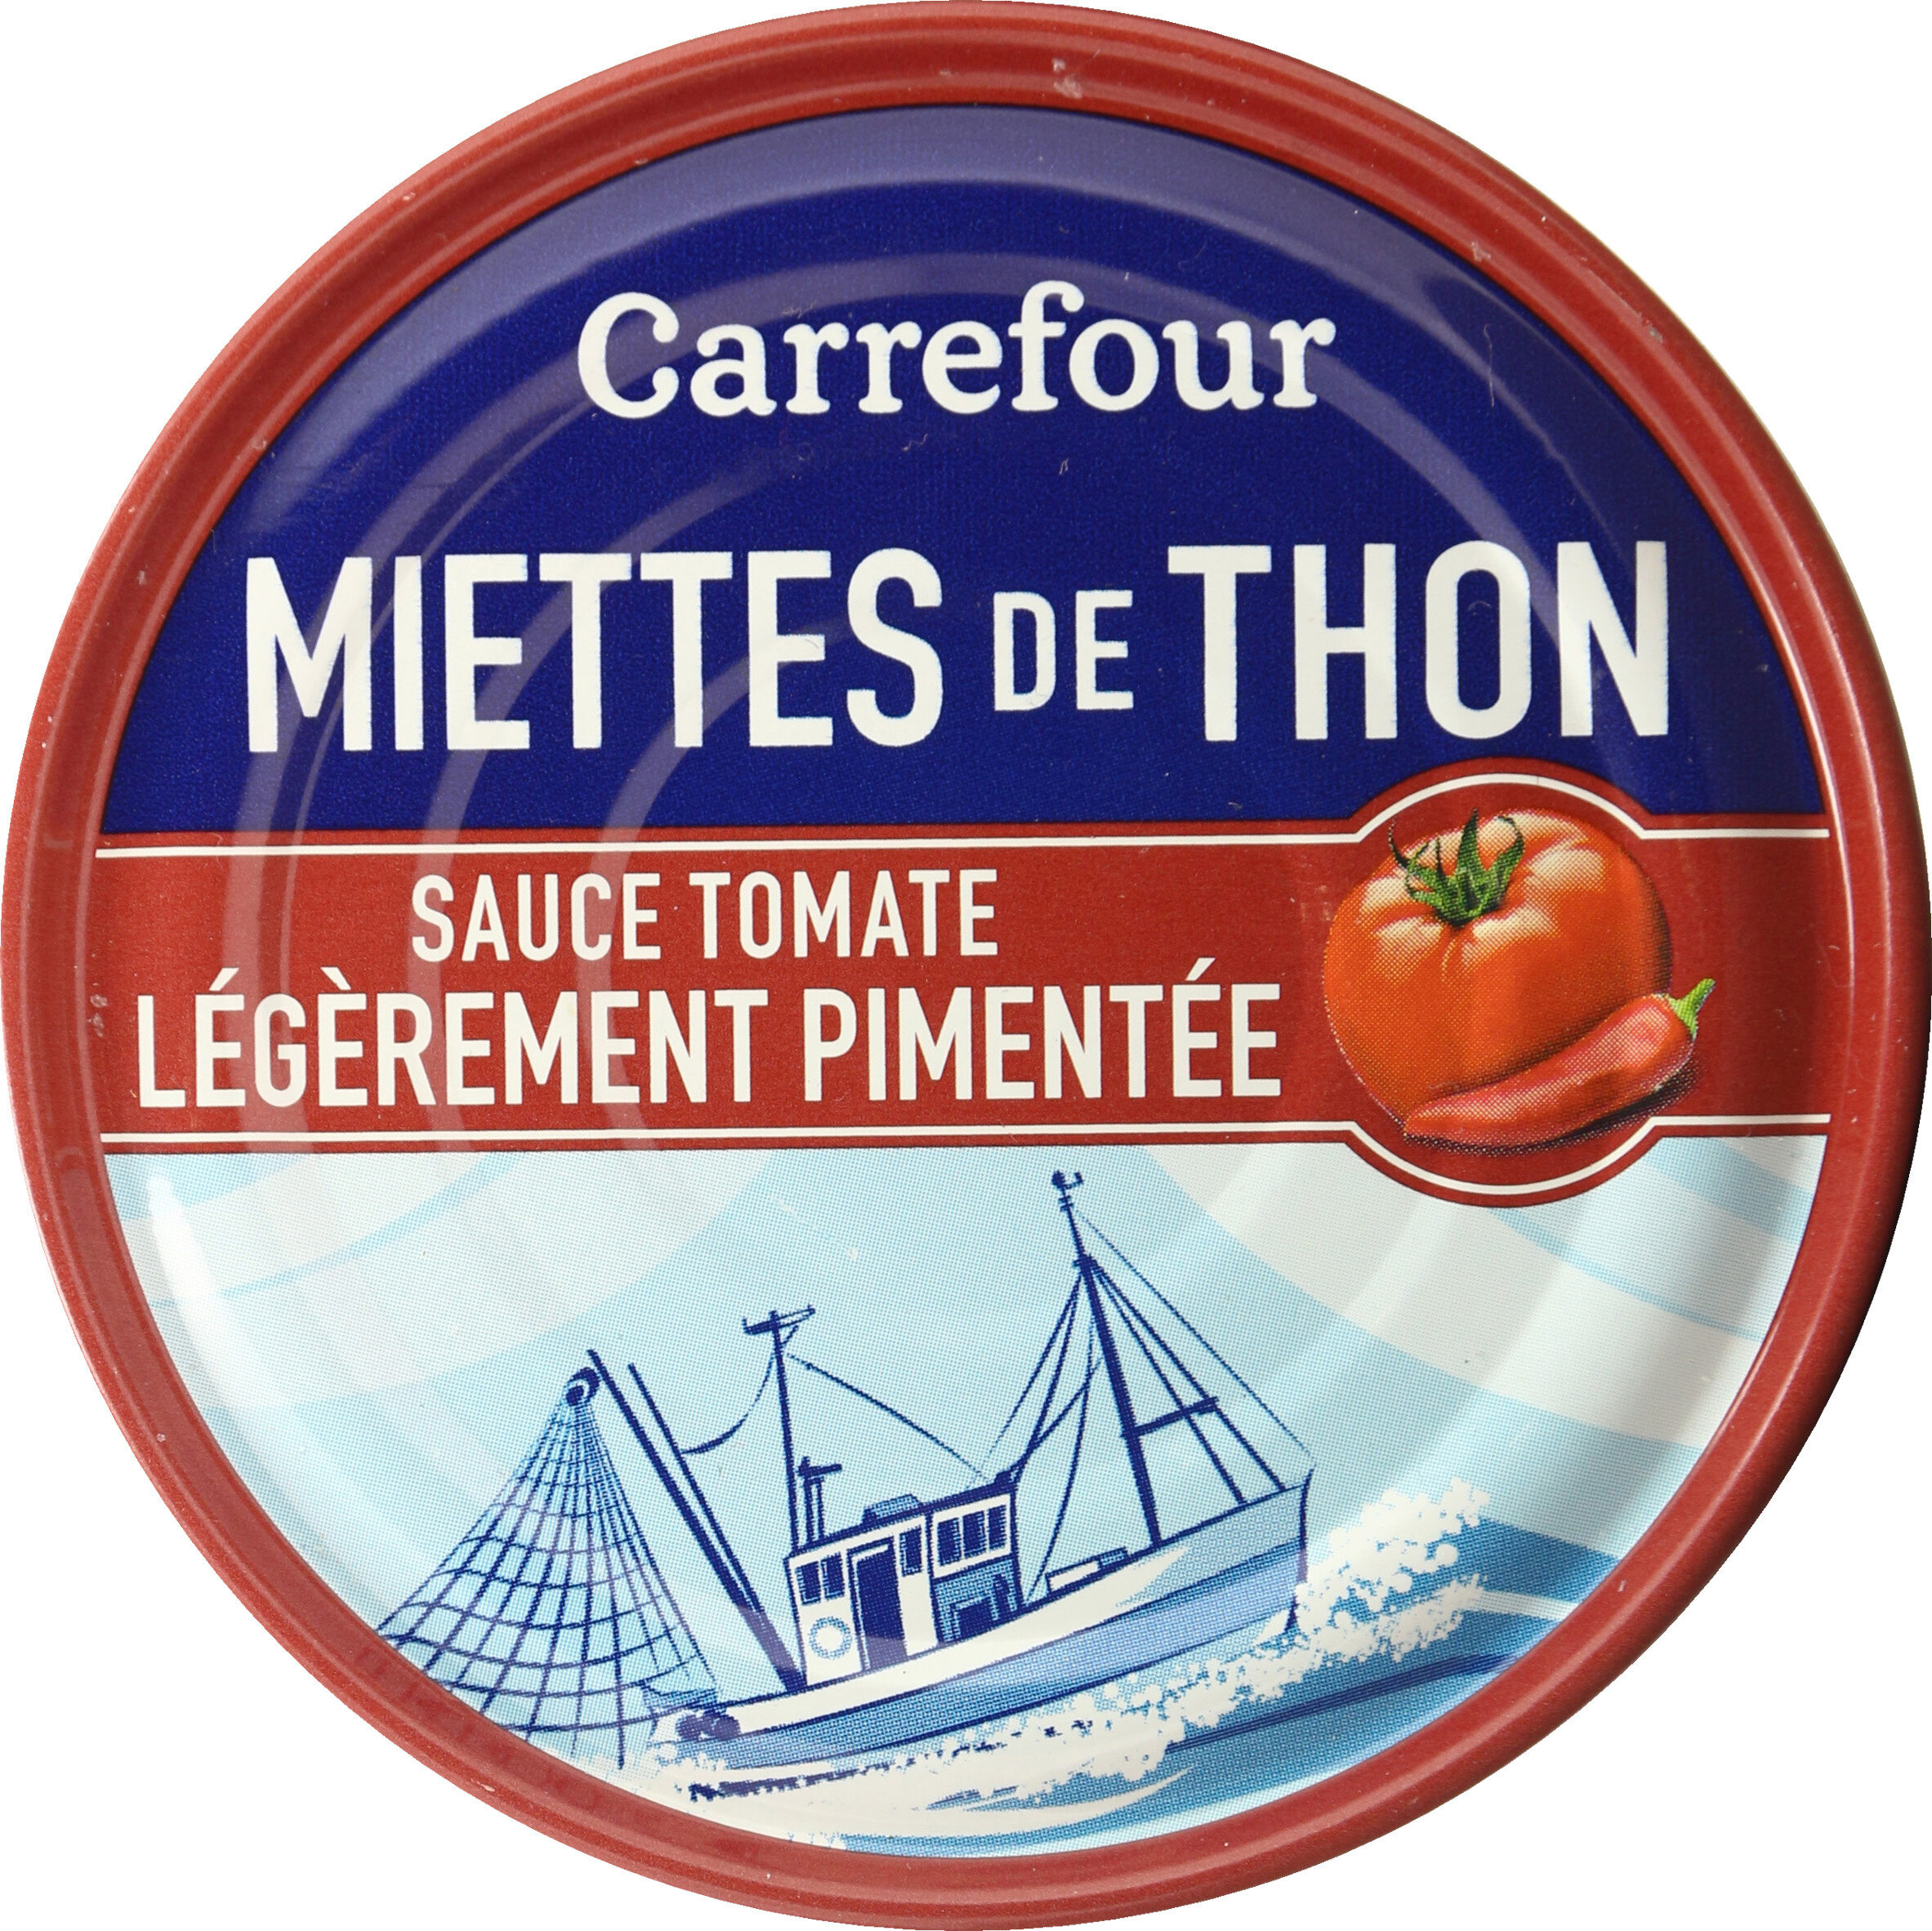 Miettes de thon sauce tomate légèrement pimentée - Produit